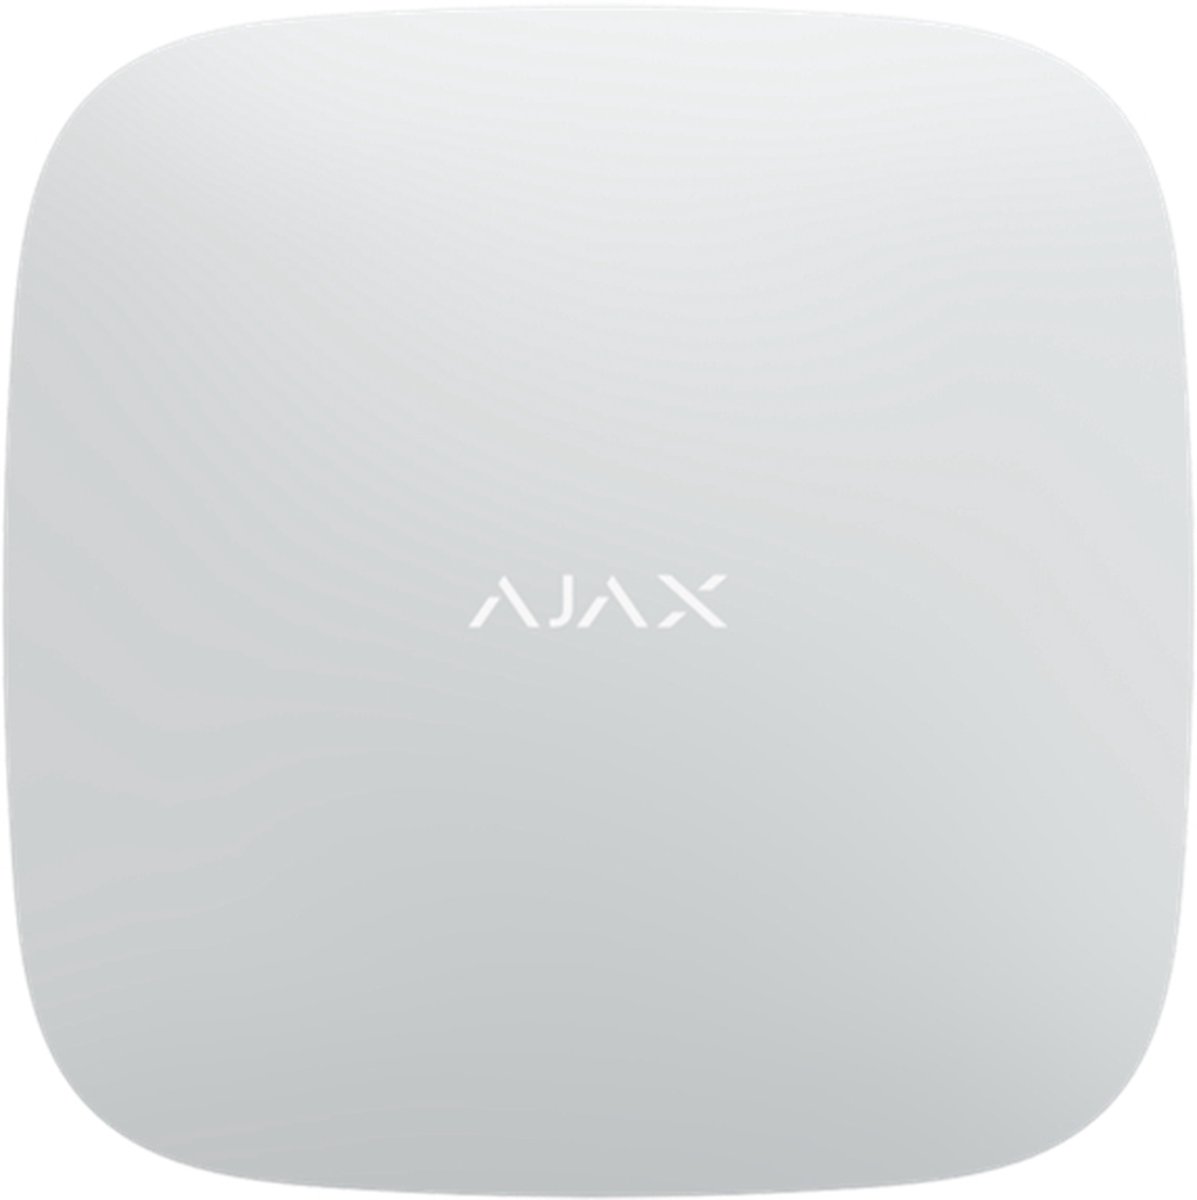 Ajax REX 2 Wit